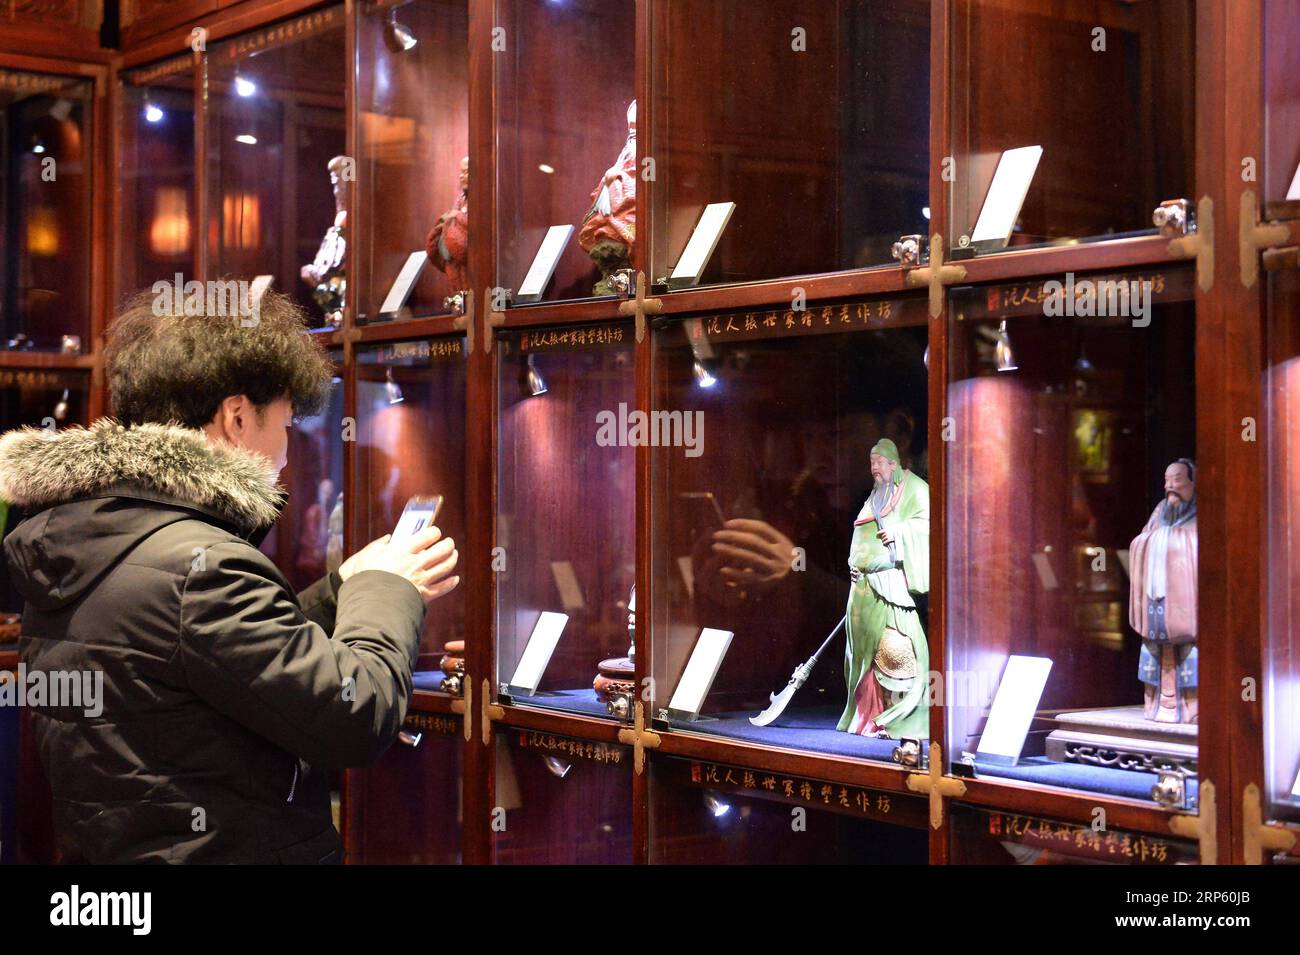 (181229) -- PÉKIN, 29 déc. 2018 (Xinhua) -- Un client regarde les figurines de la galerie d'art Clay Figure Zhang à Tianjin, dans le nord de la Chine, 28 déc. 2018. Figure d'argile Zhang est un nom familier de l'art populaire traditionnel en Chine, et une telle œuvre a une histoire de près de 200 ans. Zhang Yu, le fabricant de figurines en argile de sixième génération de sa famille, a pris en charge l’entreprise familiale en 1996, alors qu’il n’avait que 18 ans. Au fil du temps, le métier et la marque ont évolué. Au lieu de fabriquer des figurines et de les vendre comme un vendeur de rue, il a embauché des directeurs artistiques pour exploiter et commercialiser le val artistique Banque D'Images